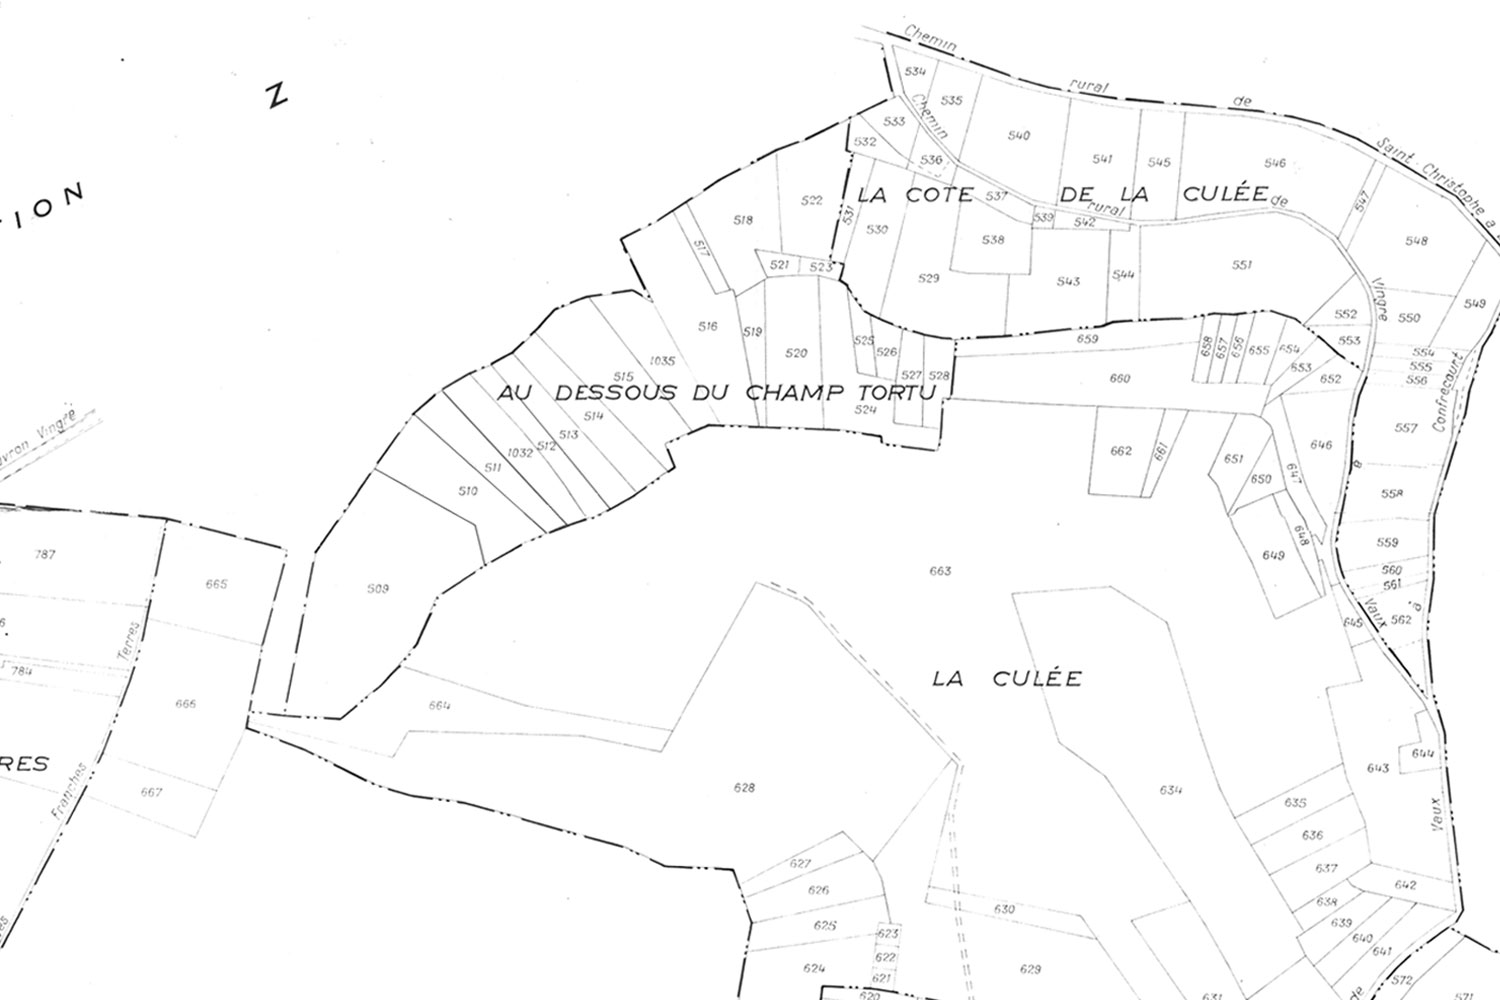 Extrait du plan cadastral de la commune de Berny-Rivière, 1972